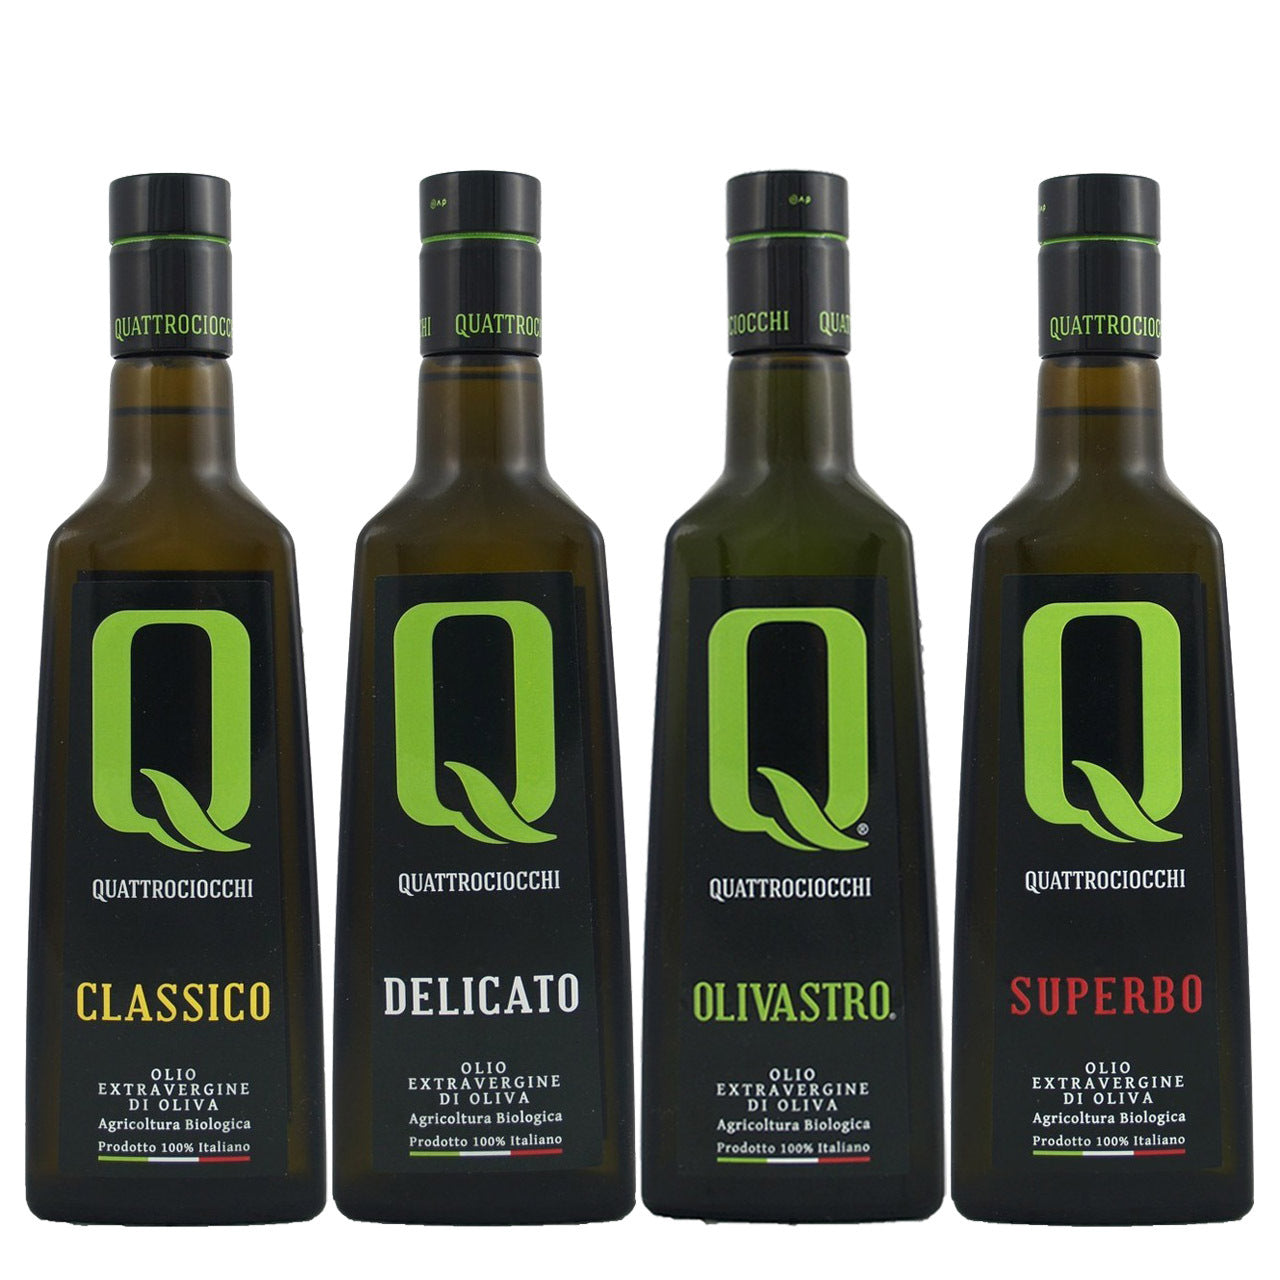 The Quattrociocchi Quattro Organic Package 2021 Harvest